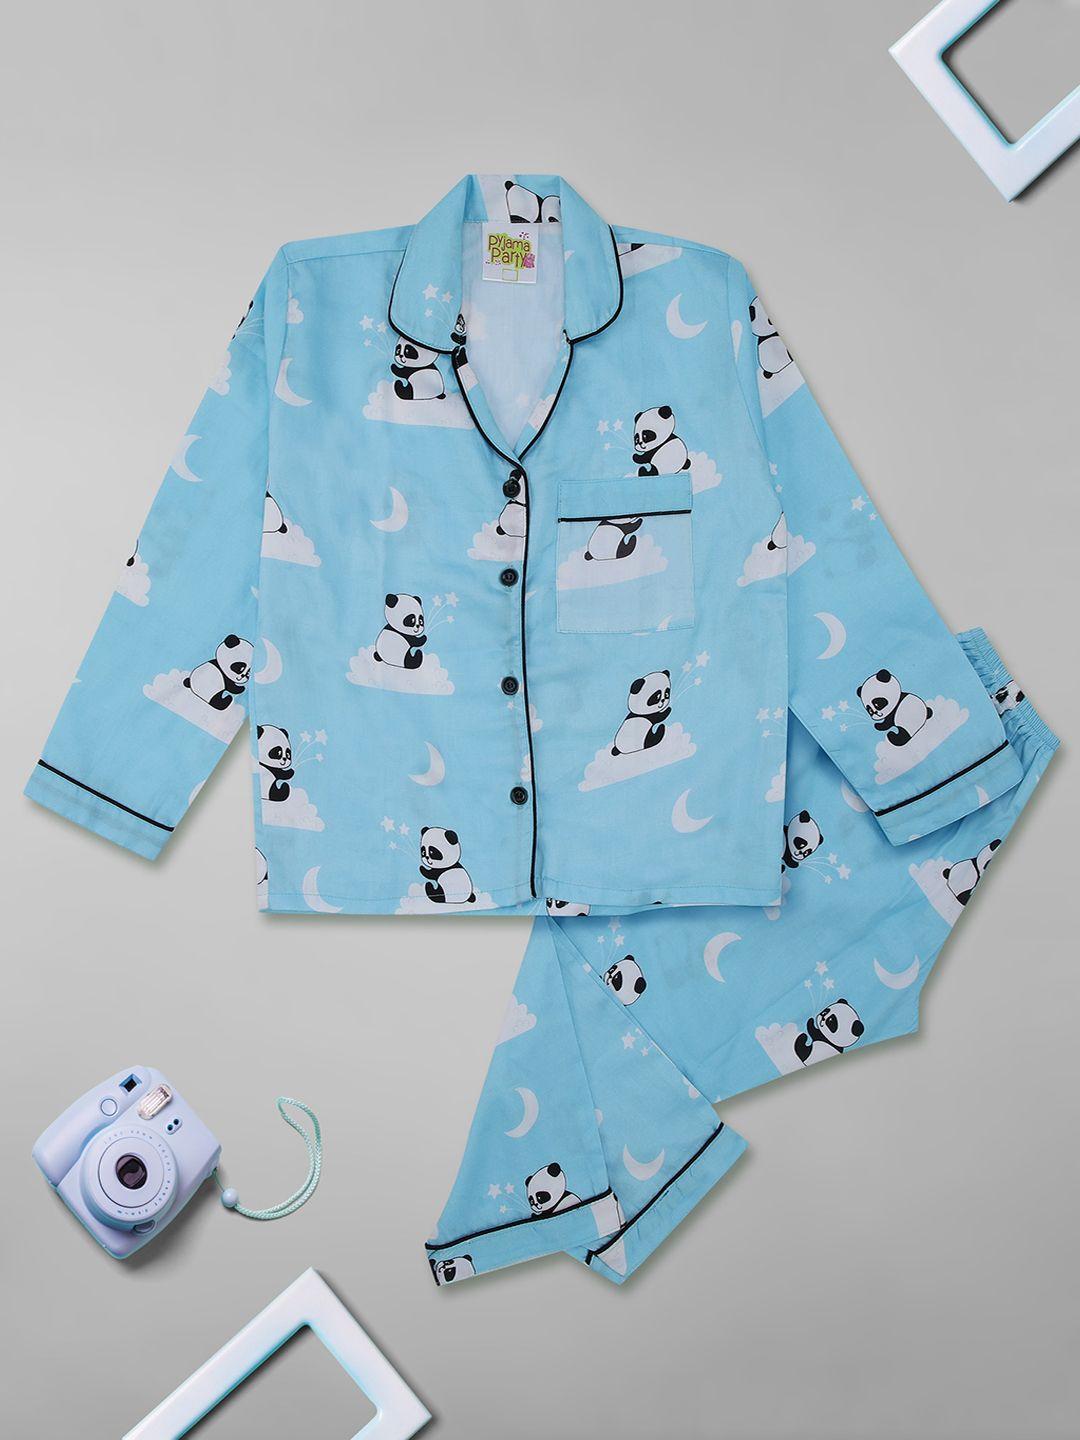 pyjama party unisex kids blue & white printed night suit